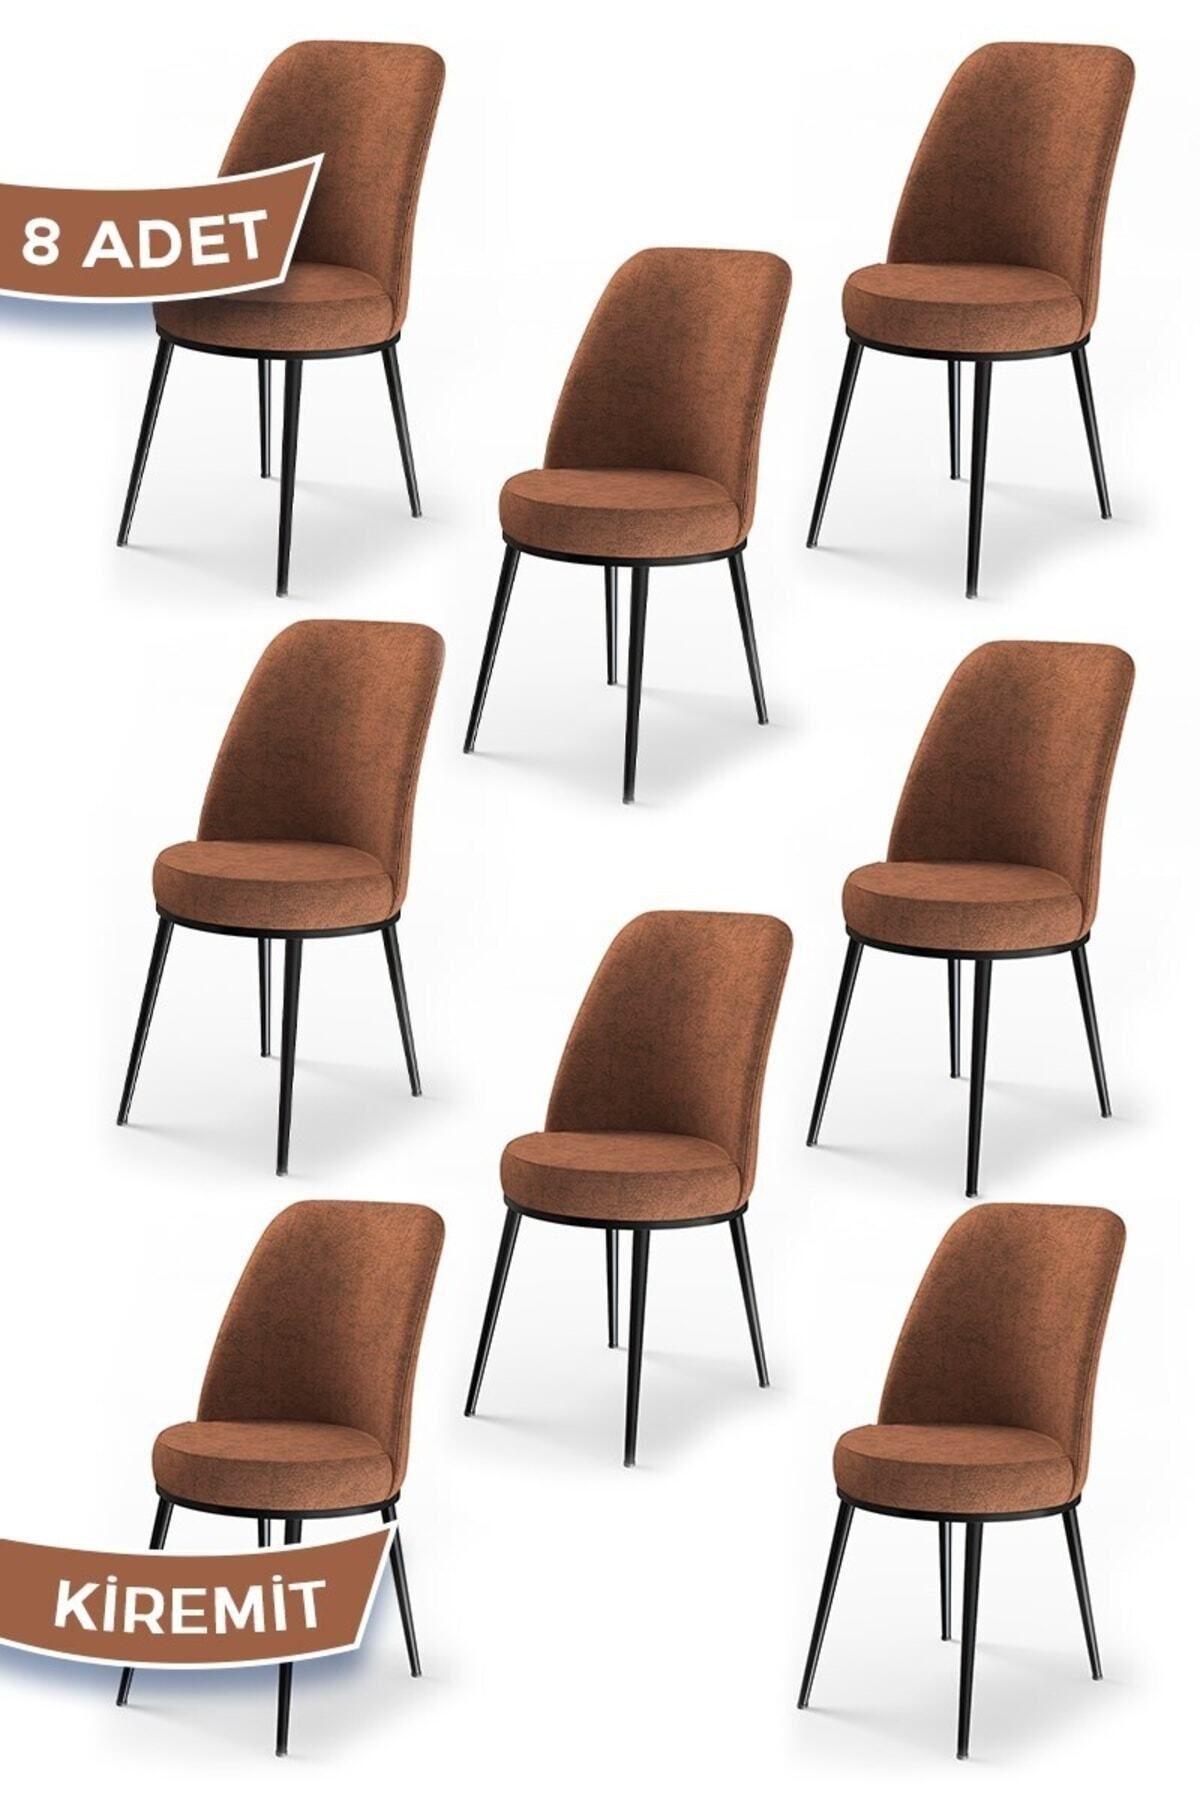 Canisa Concept Dexa Serisi, Üst Kalite Yemek Odası Sandalyesi, Metal Siyah Iskeletli, 8 Adet Kiremit Sandalye